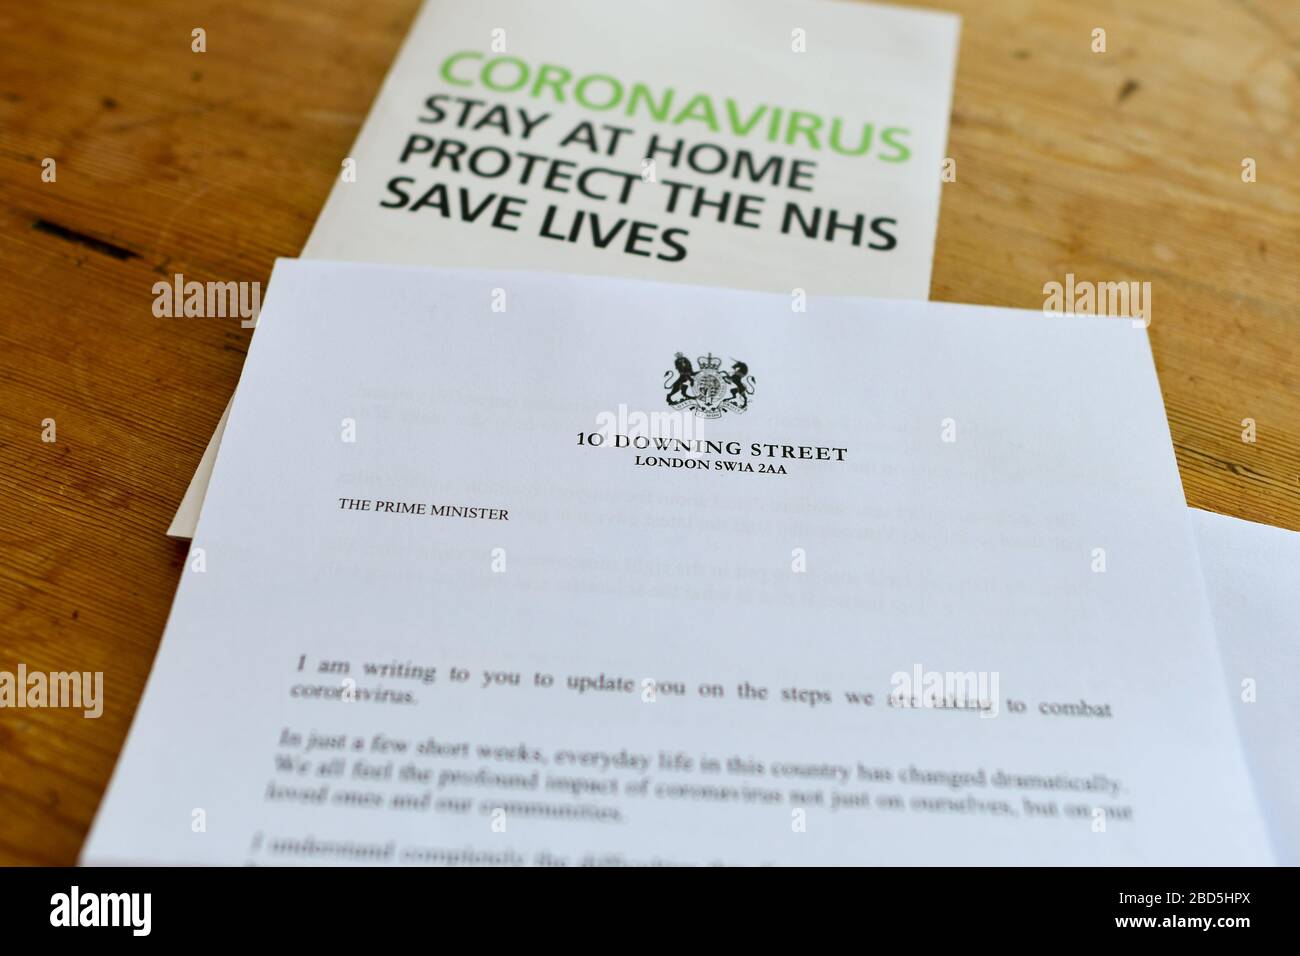 Coronavirus Reino Unido carta del Gobierno del Reino Unido firmado por Boris Johnson con Coronavirus permanecer en casa proteger el mensaje y la información de nhs salvar vidas Foto de stock